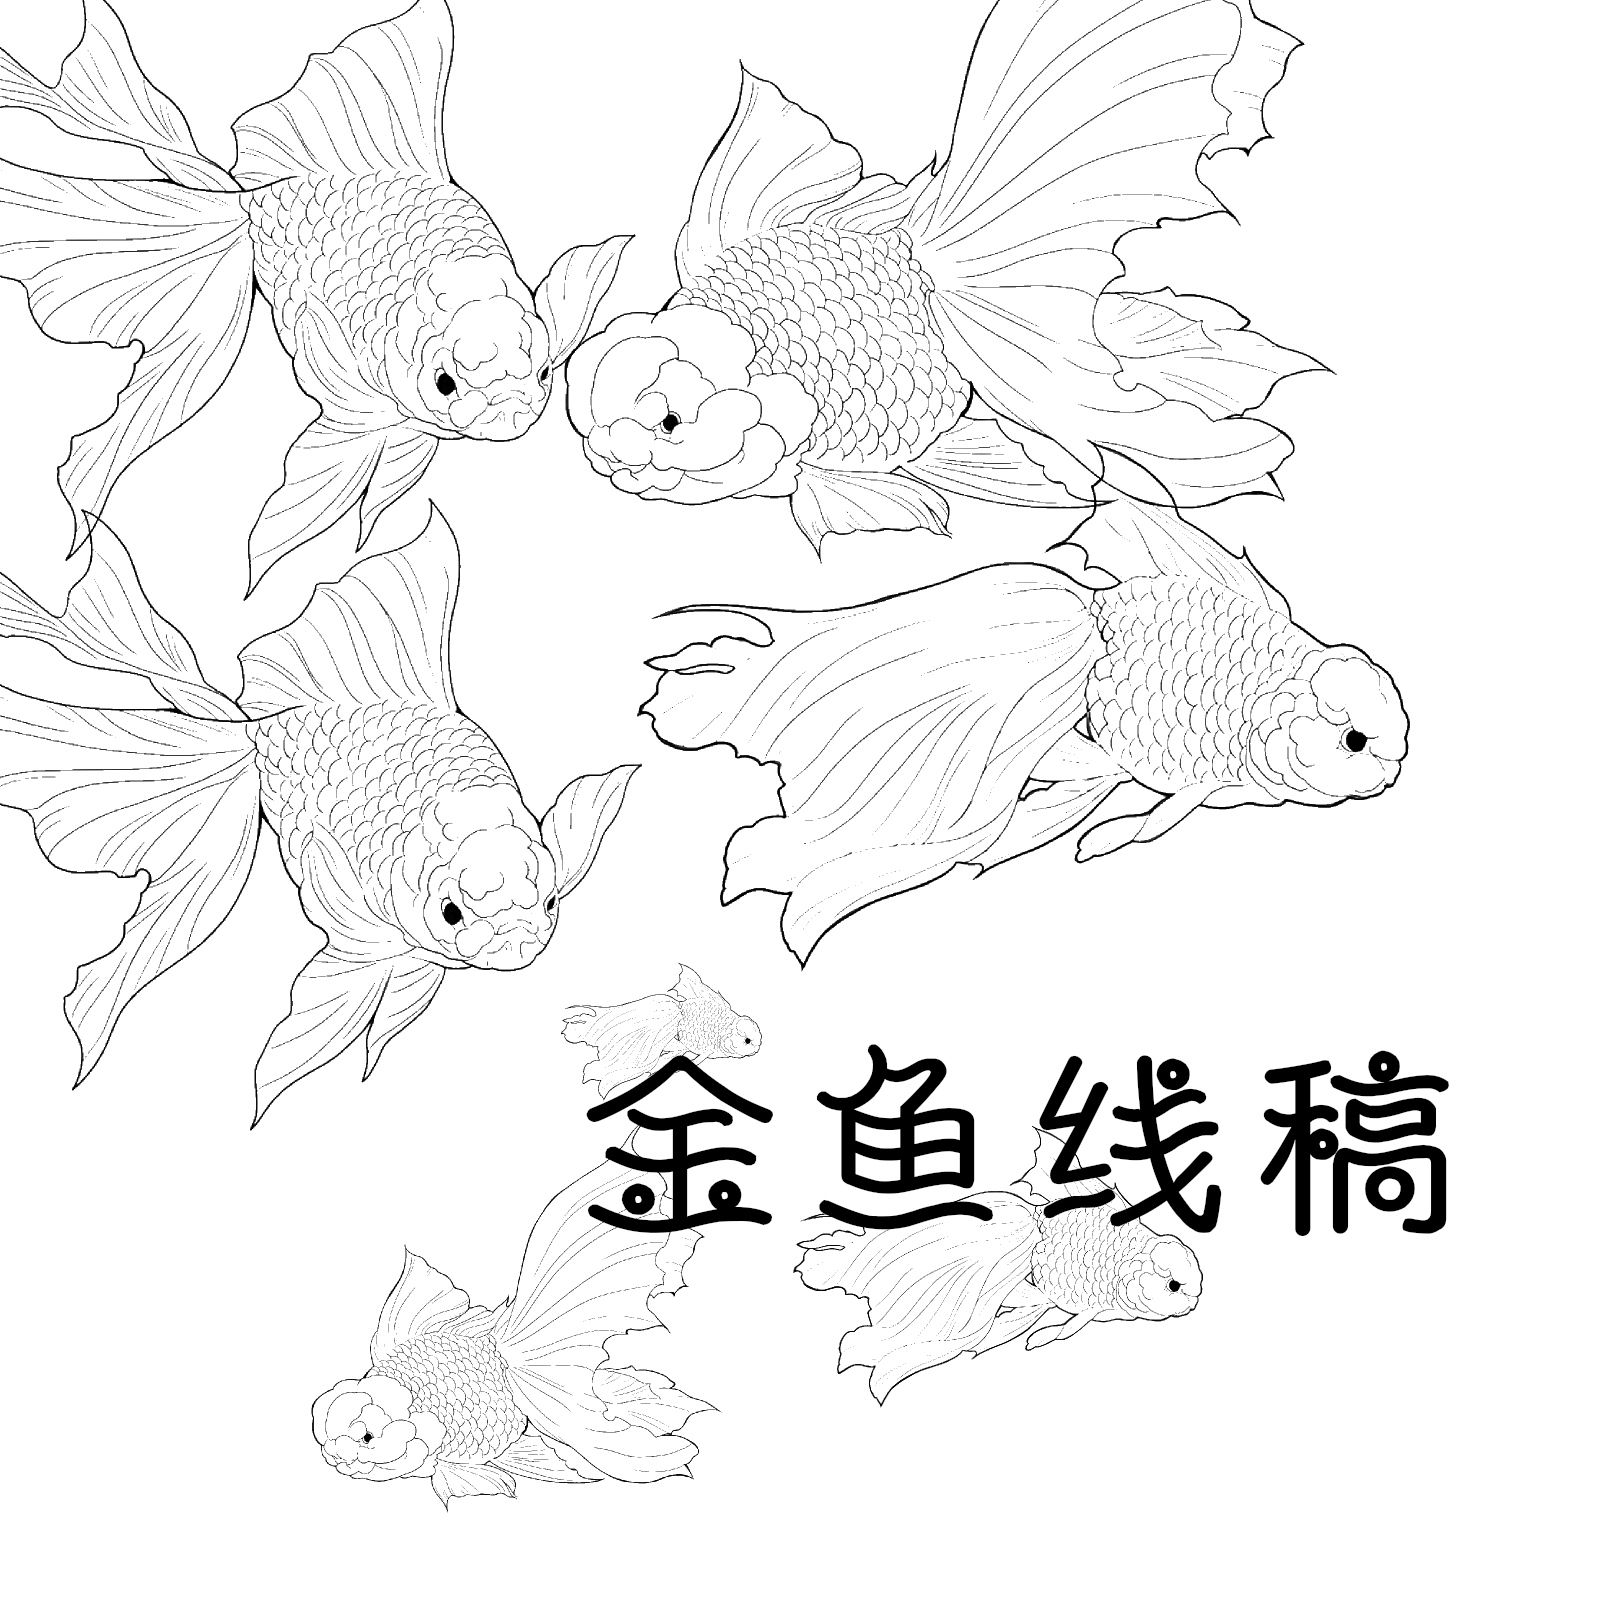 金鱼的简笔画 金鱼的简笔画图片大全 - 水彩迷